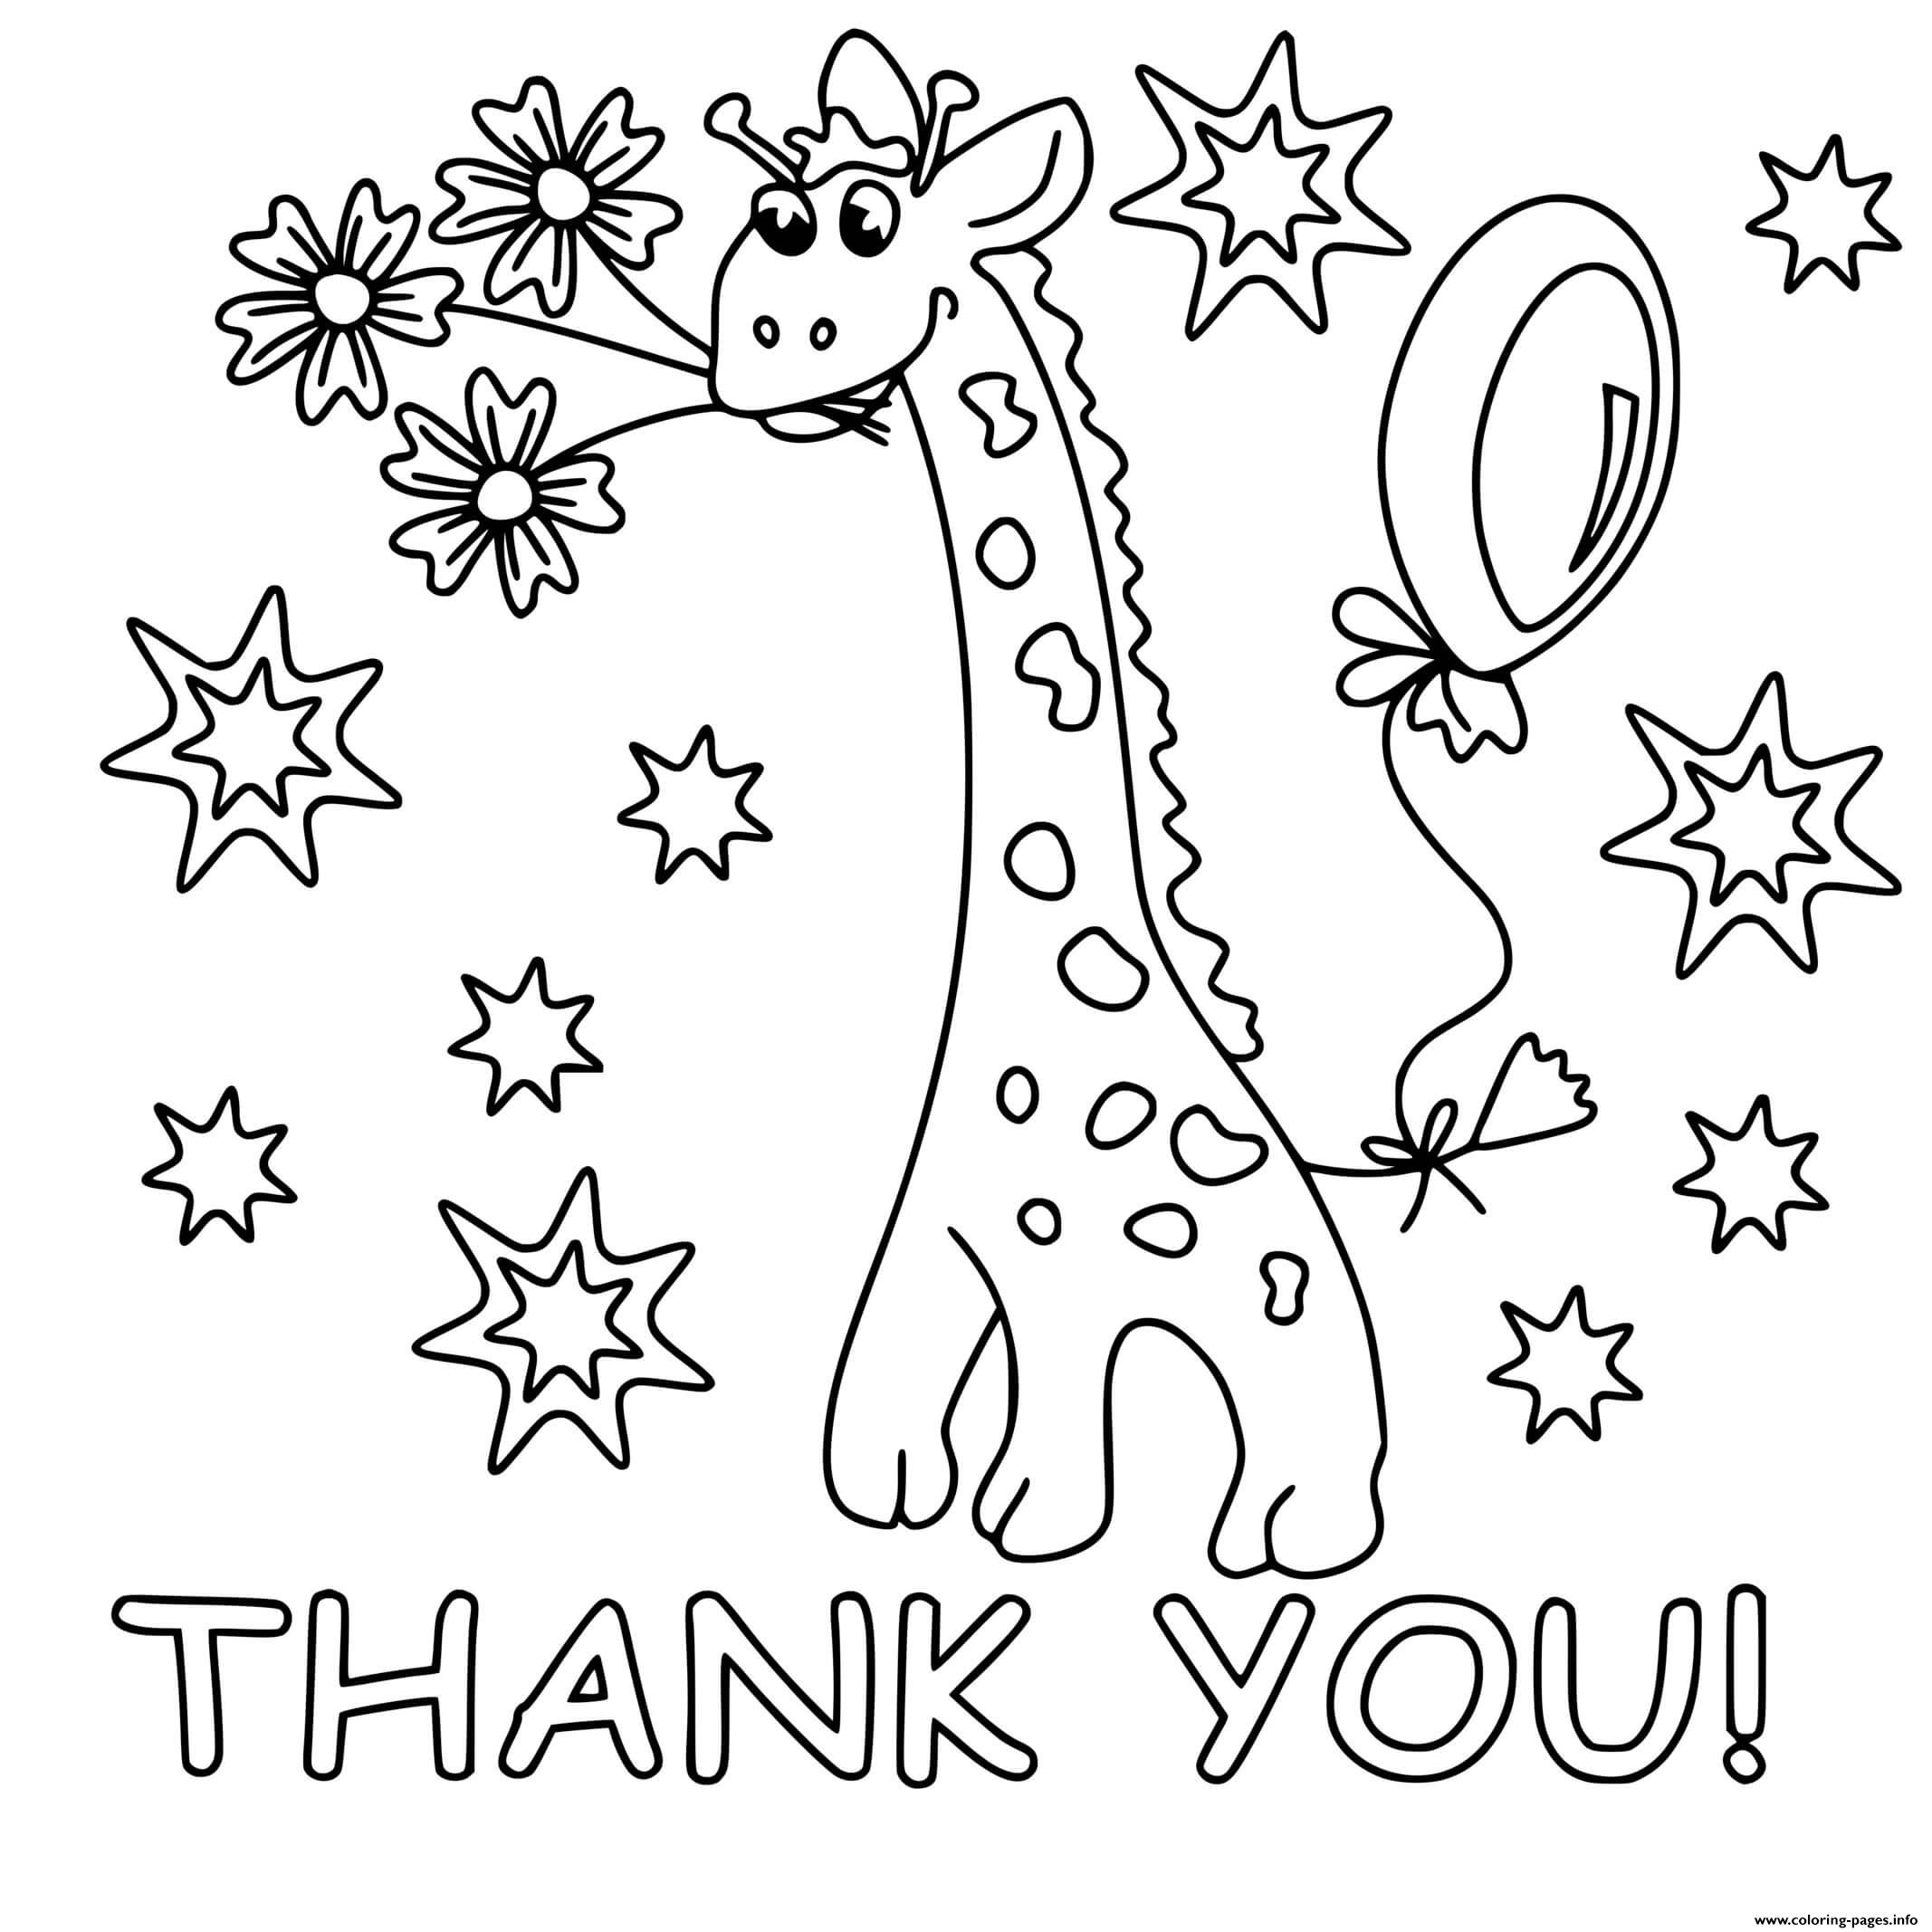 Thank You Giraffe coloring